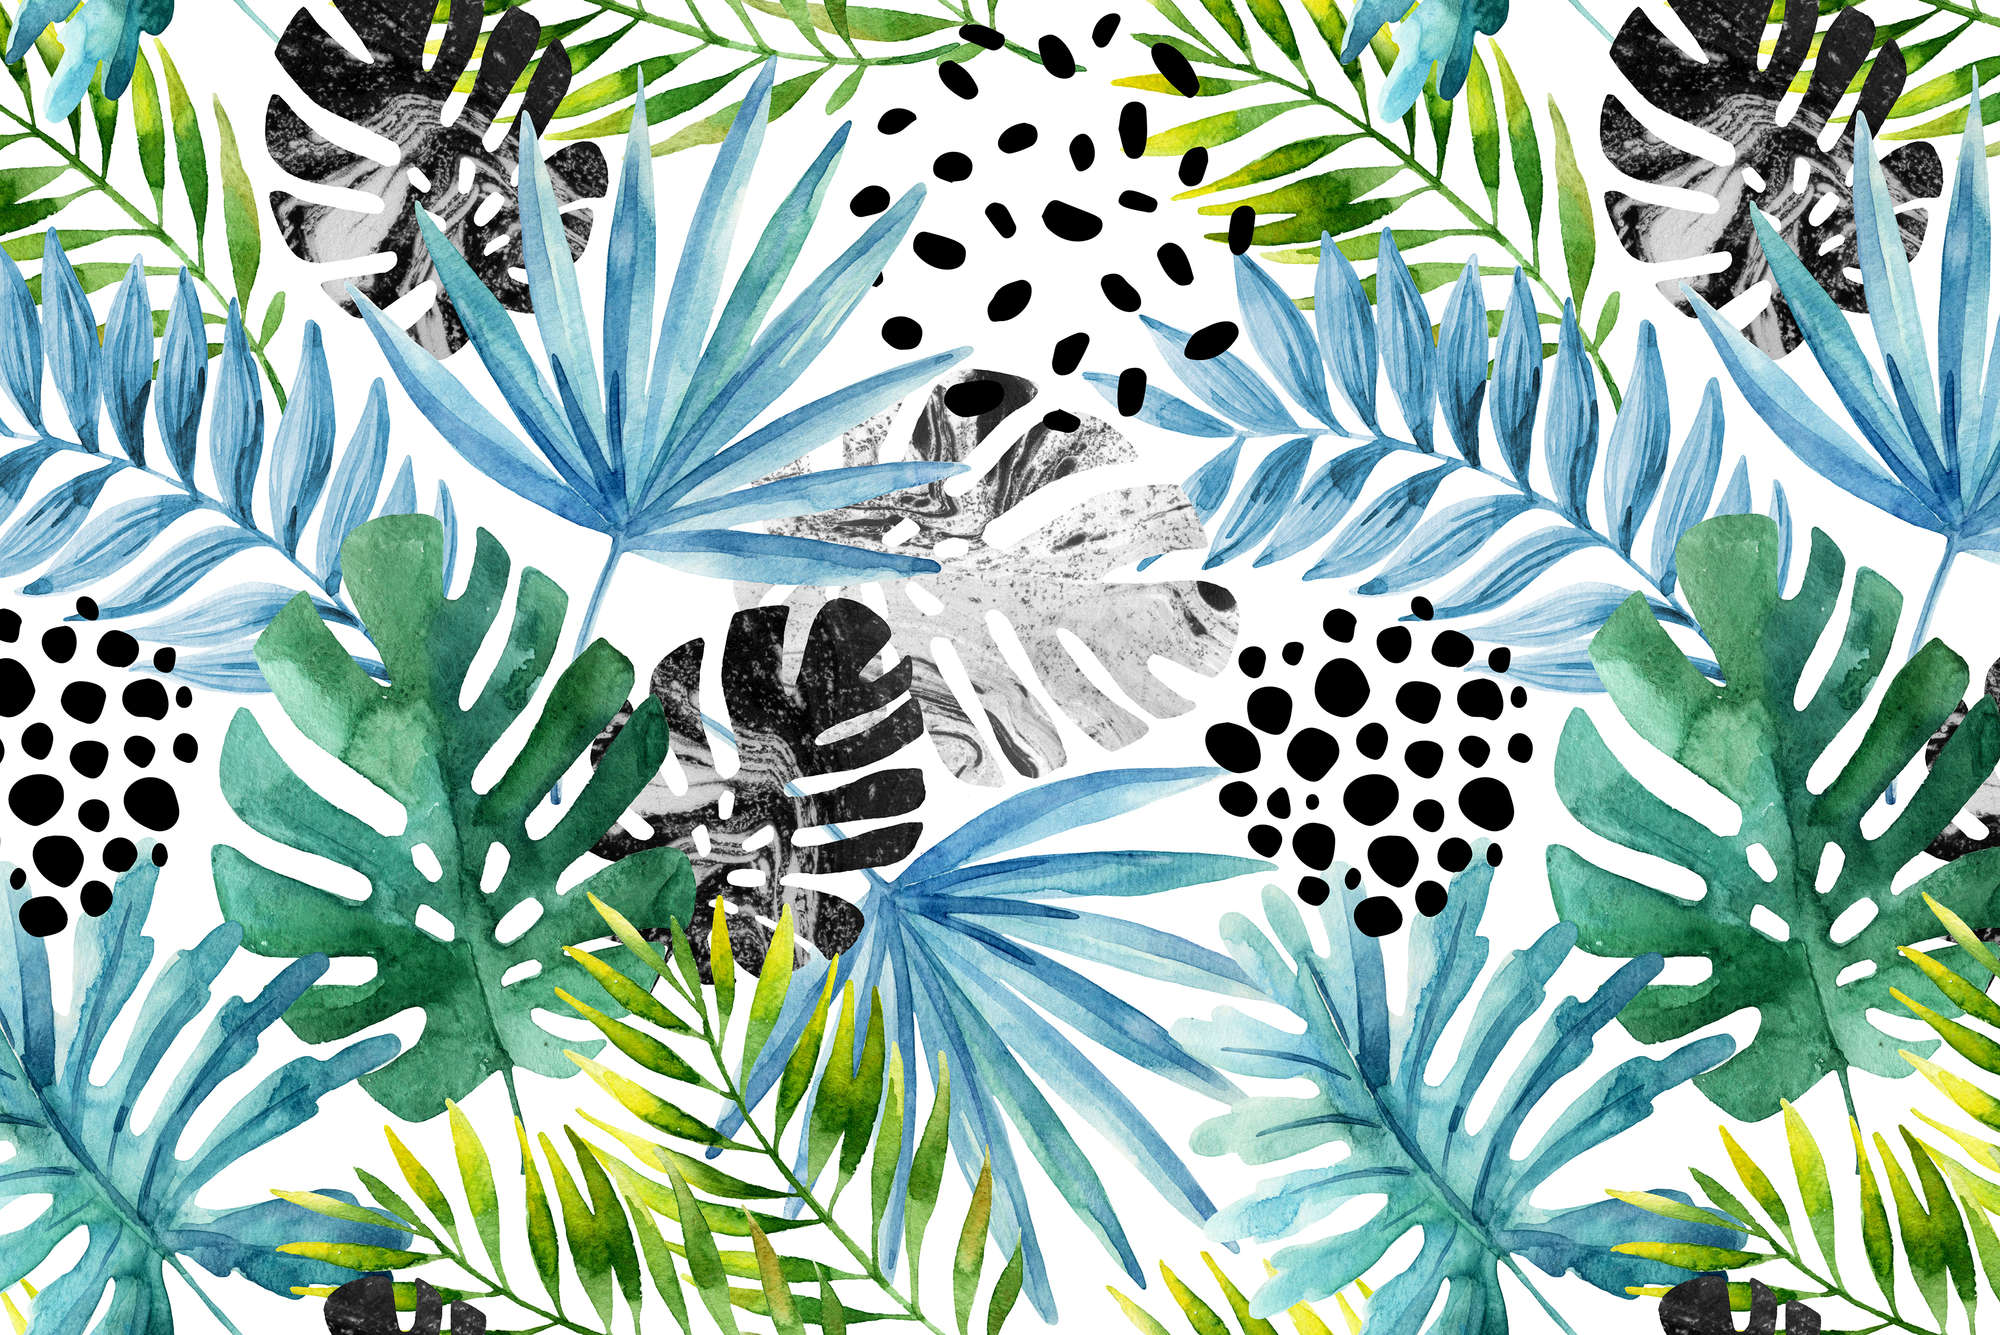             Papier peint graphique Jungle Plantes multicolores sur intissé lisse mat
        